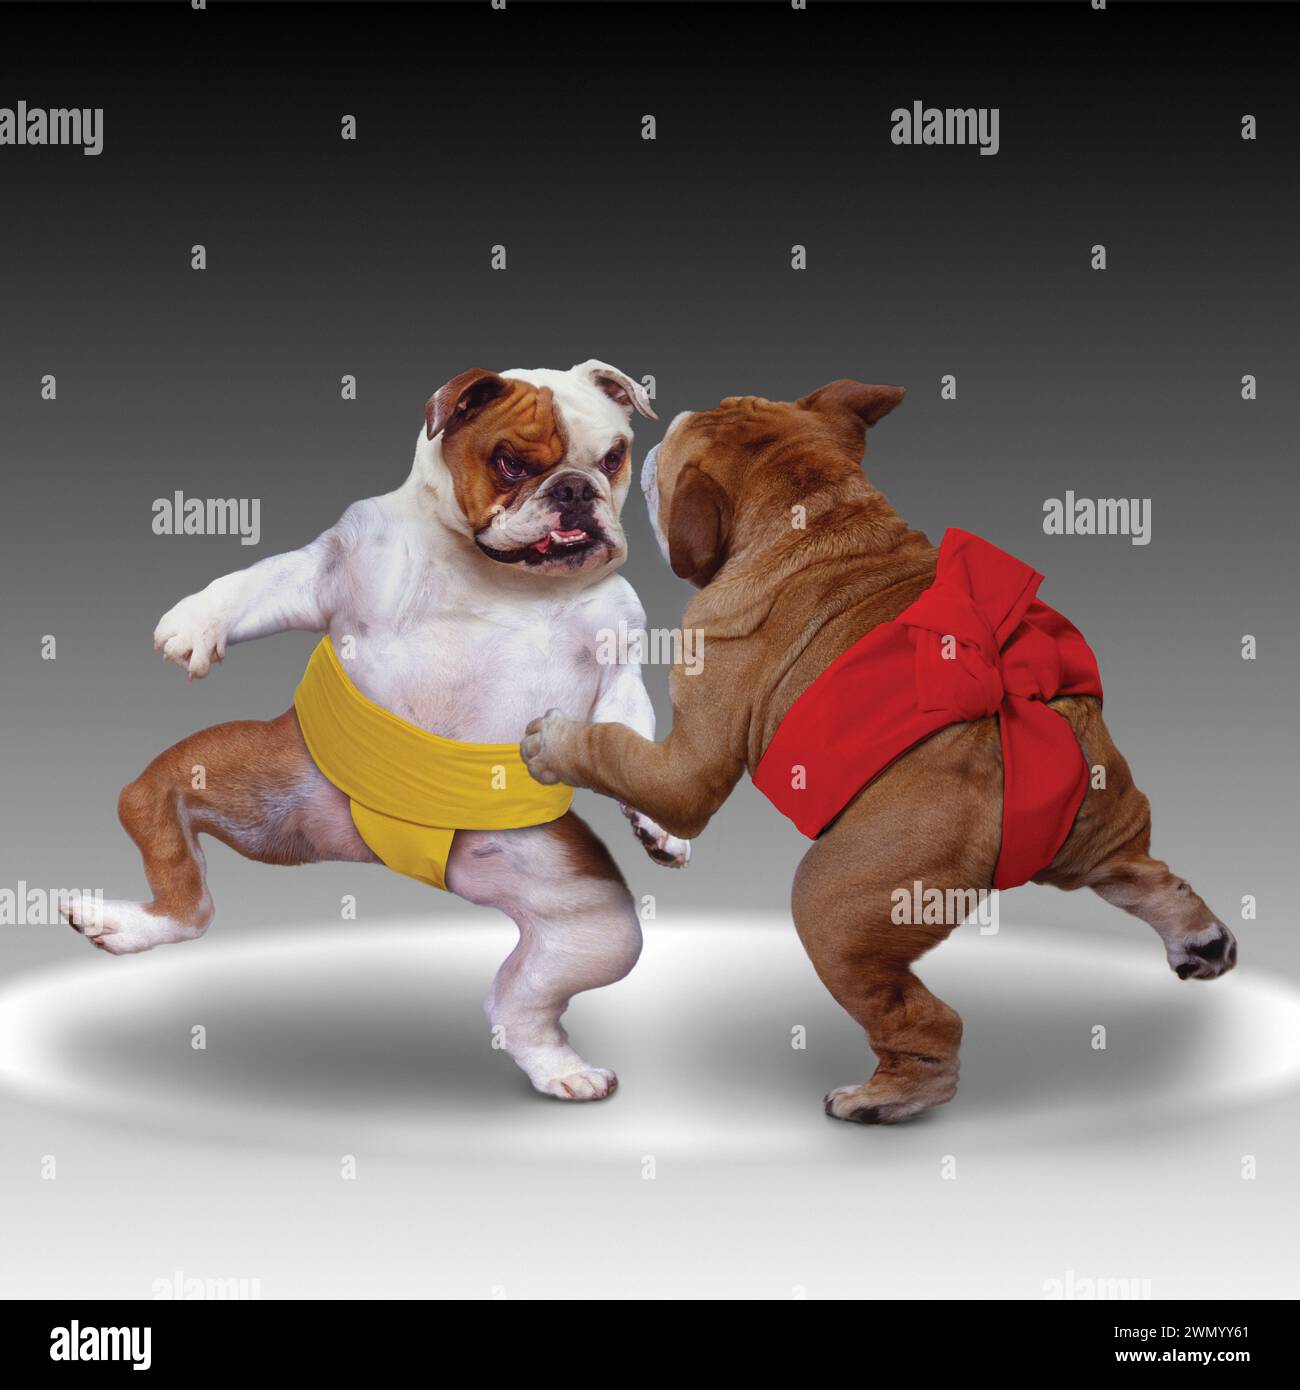 Deux lutteurs de sumo bouledogue s'affrontent dans une drôle de photo d'animal sur les conflits et les problèmes sociaux. Banque D'Images